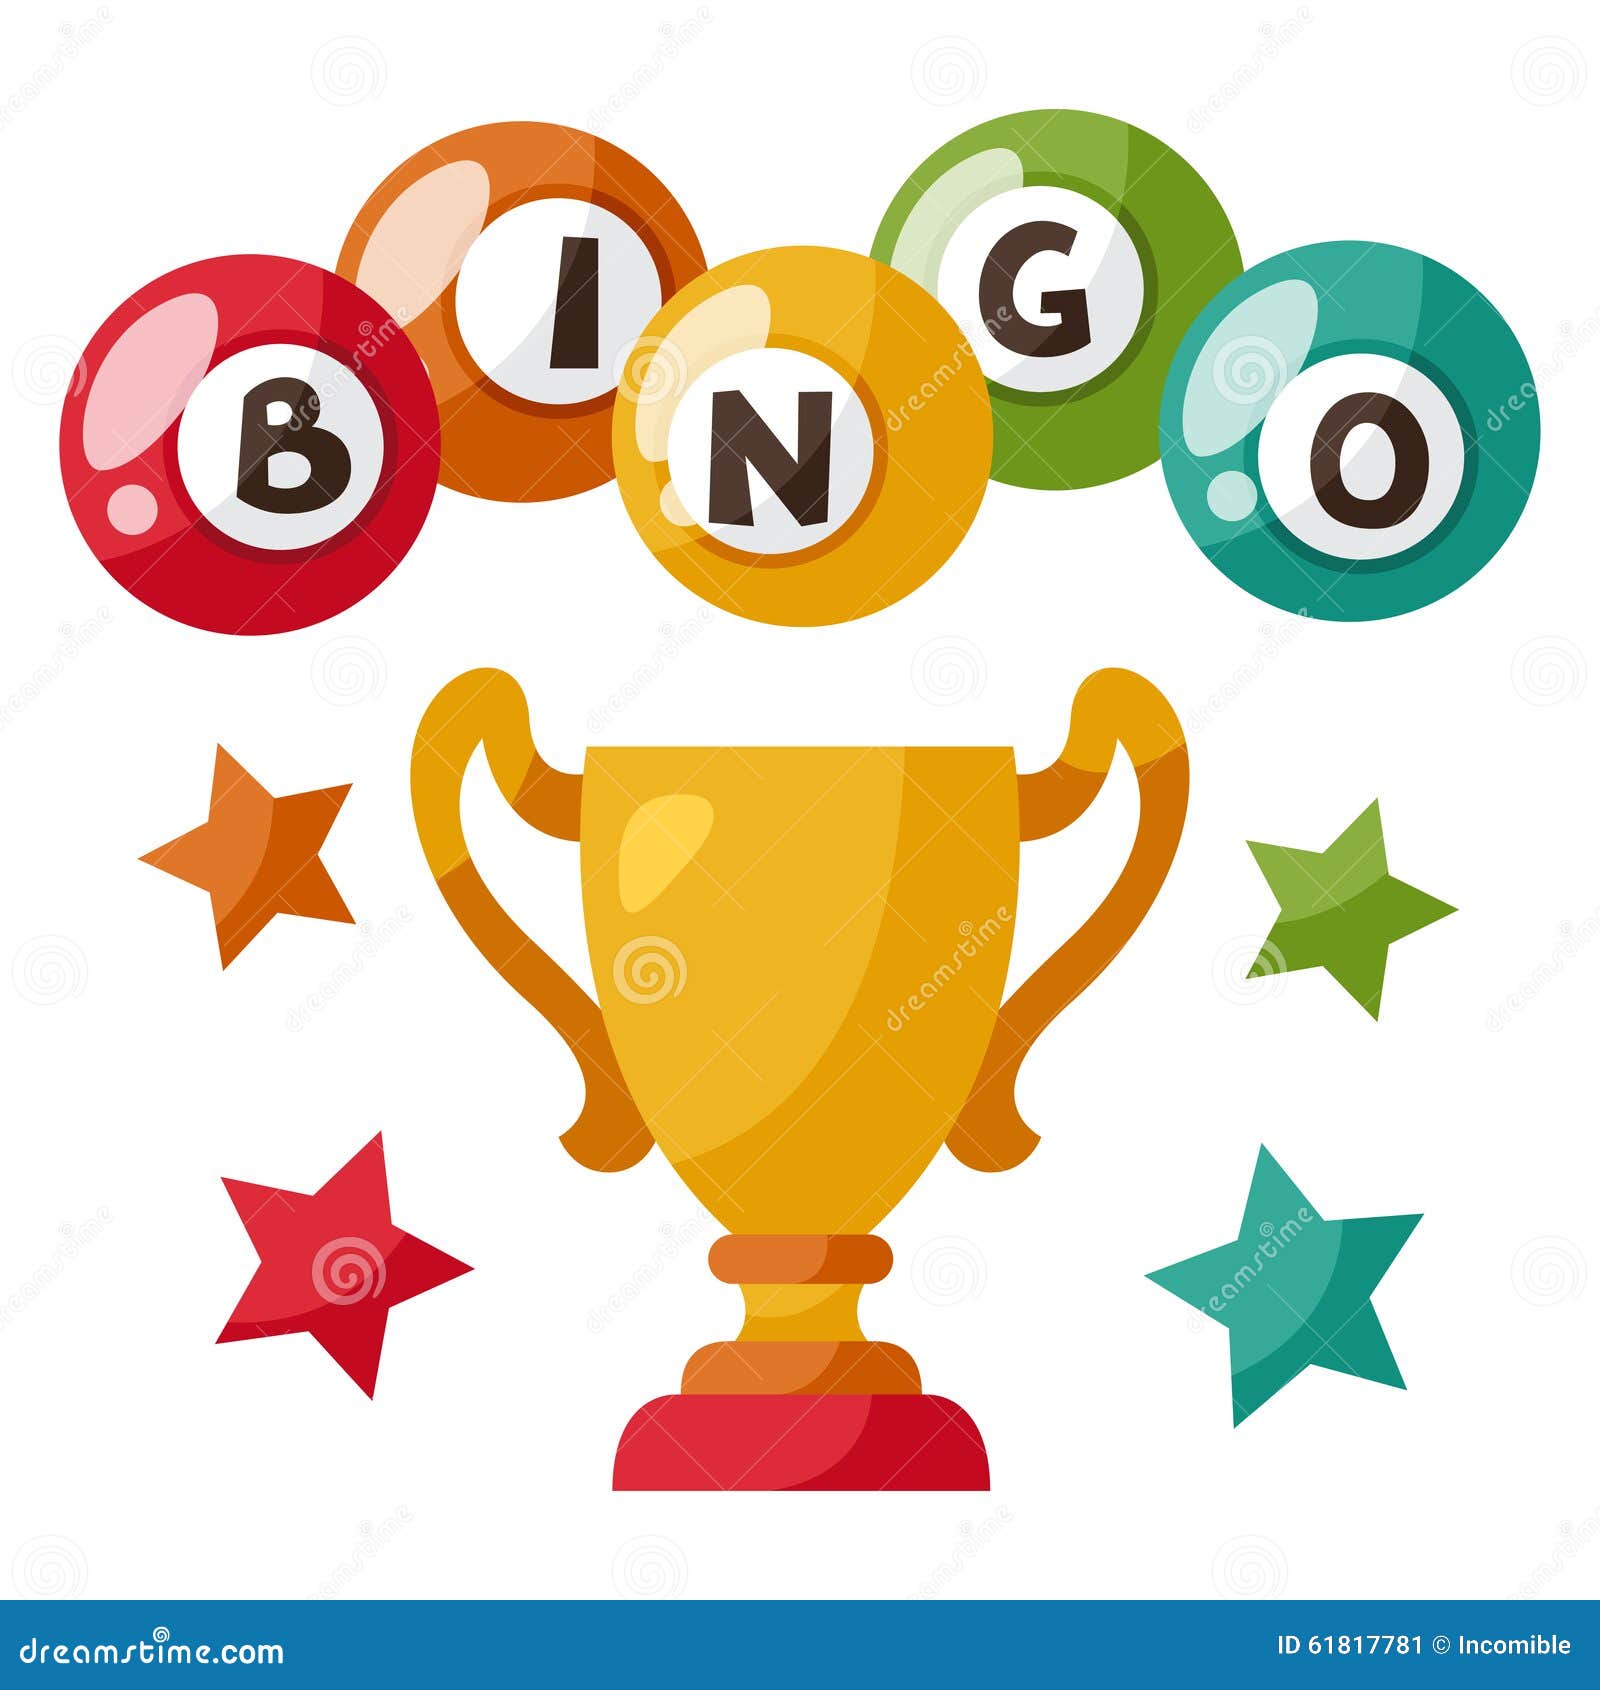 Bingo trophy